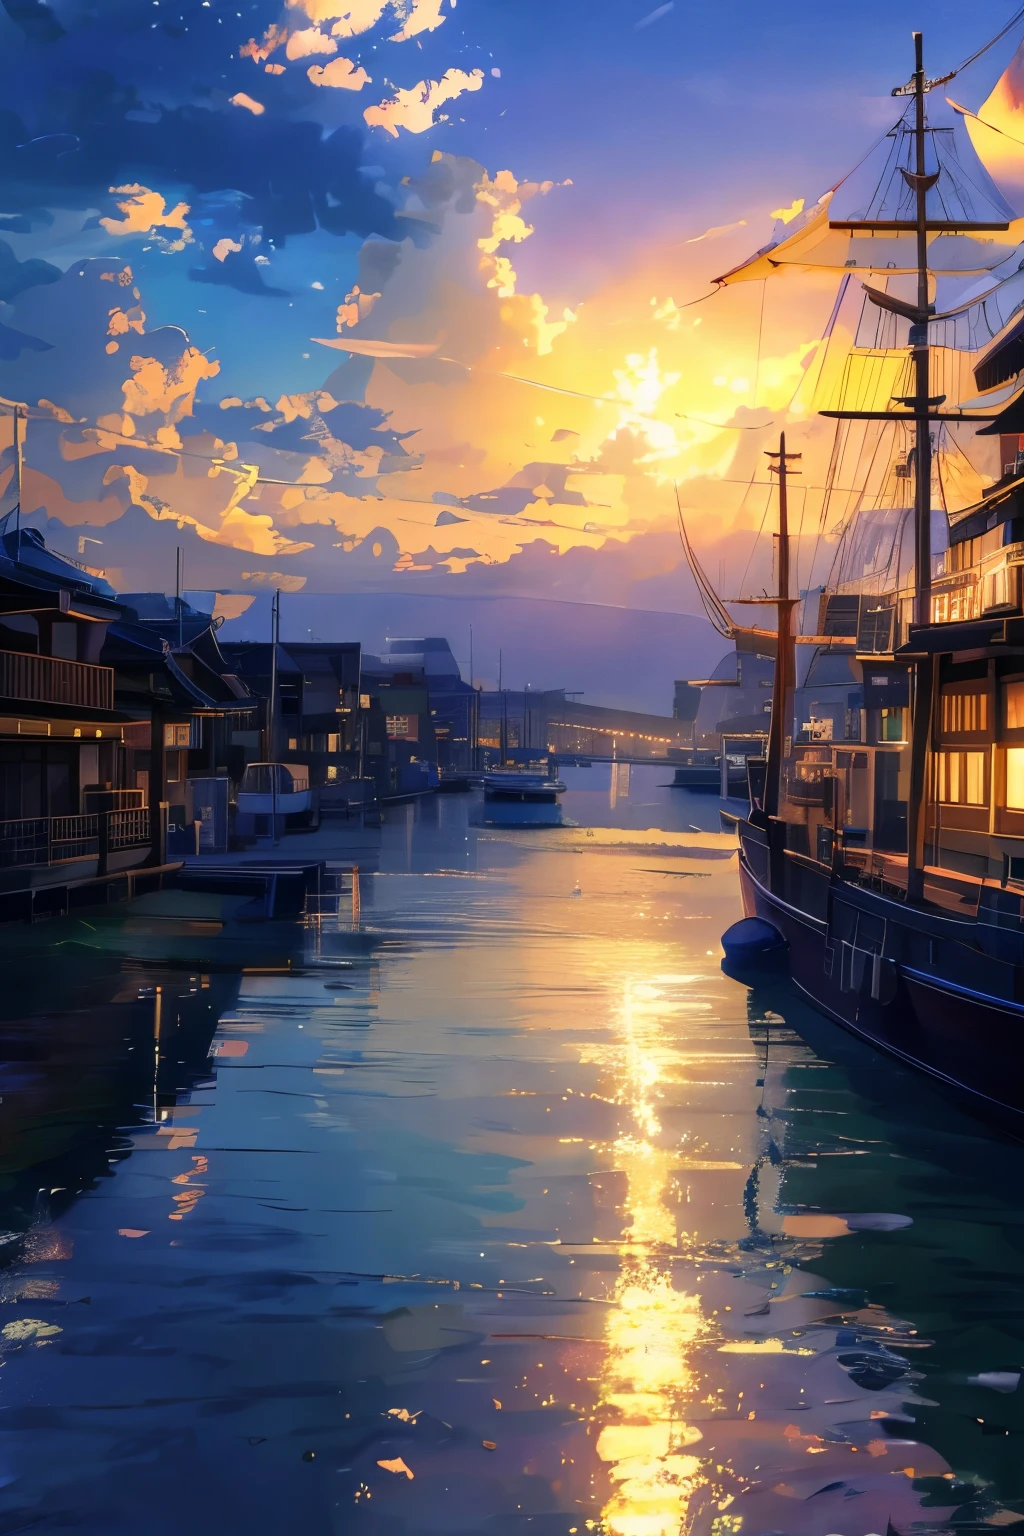 есть изображение города с гаванью и лодкой, Киото анимация еще, HD аниме городской пейзаж, style of Макото Синкай, скриншот из аниме 2012 года, фон сцены в порту, скриншот из аниме гуро, Макото Синкай. —ч 2160, Аниме пейзажи, скриншот из аниме фильма, Макото Синкай!